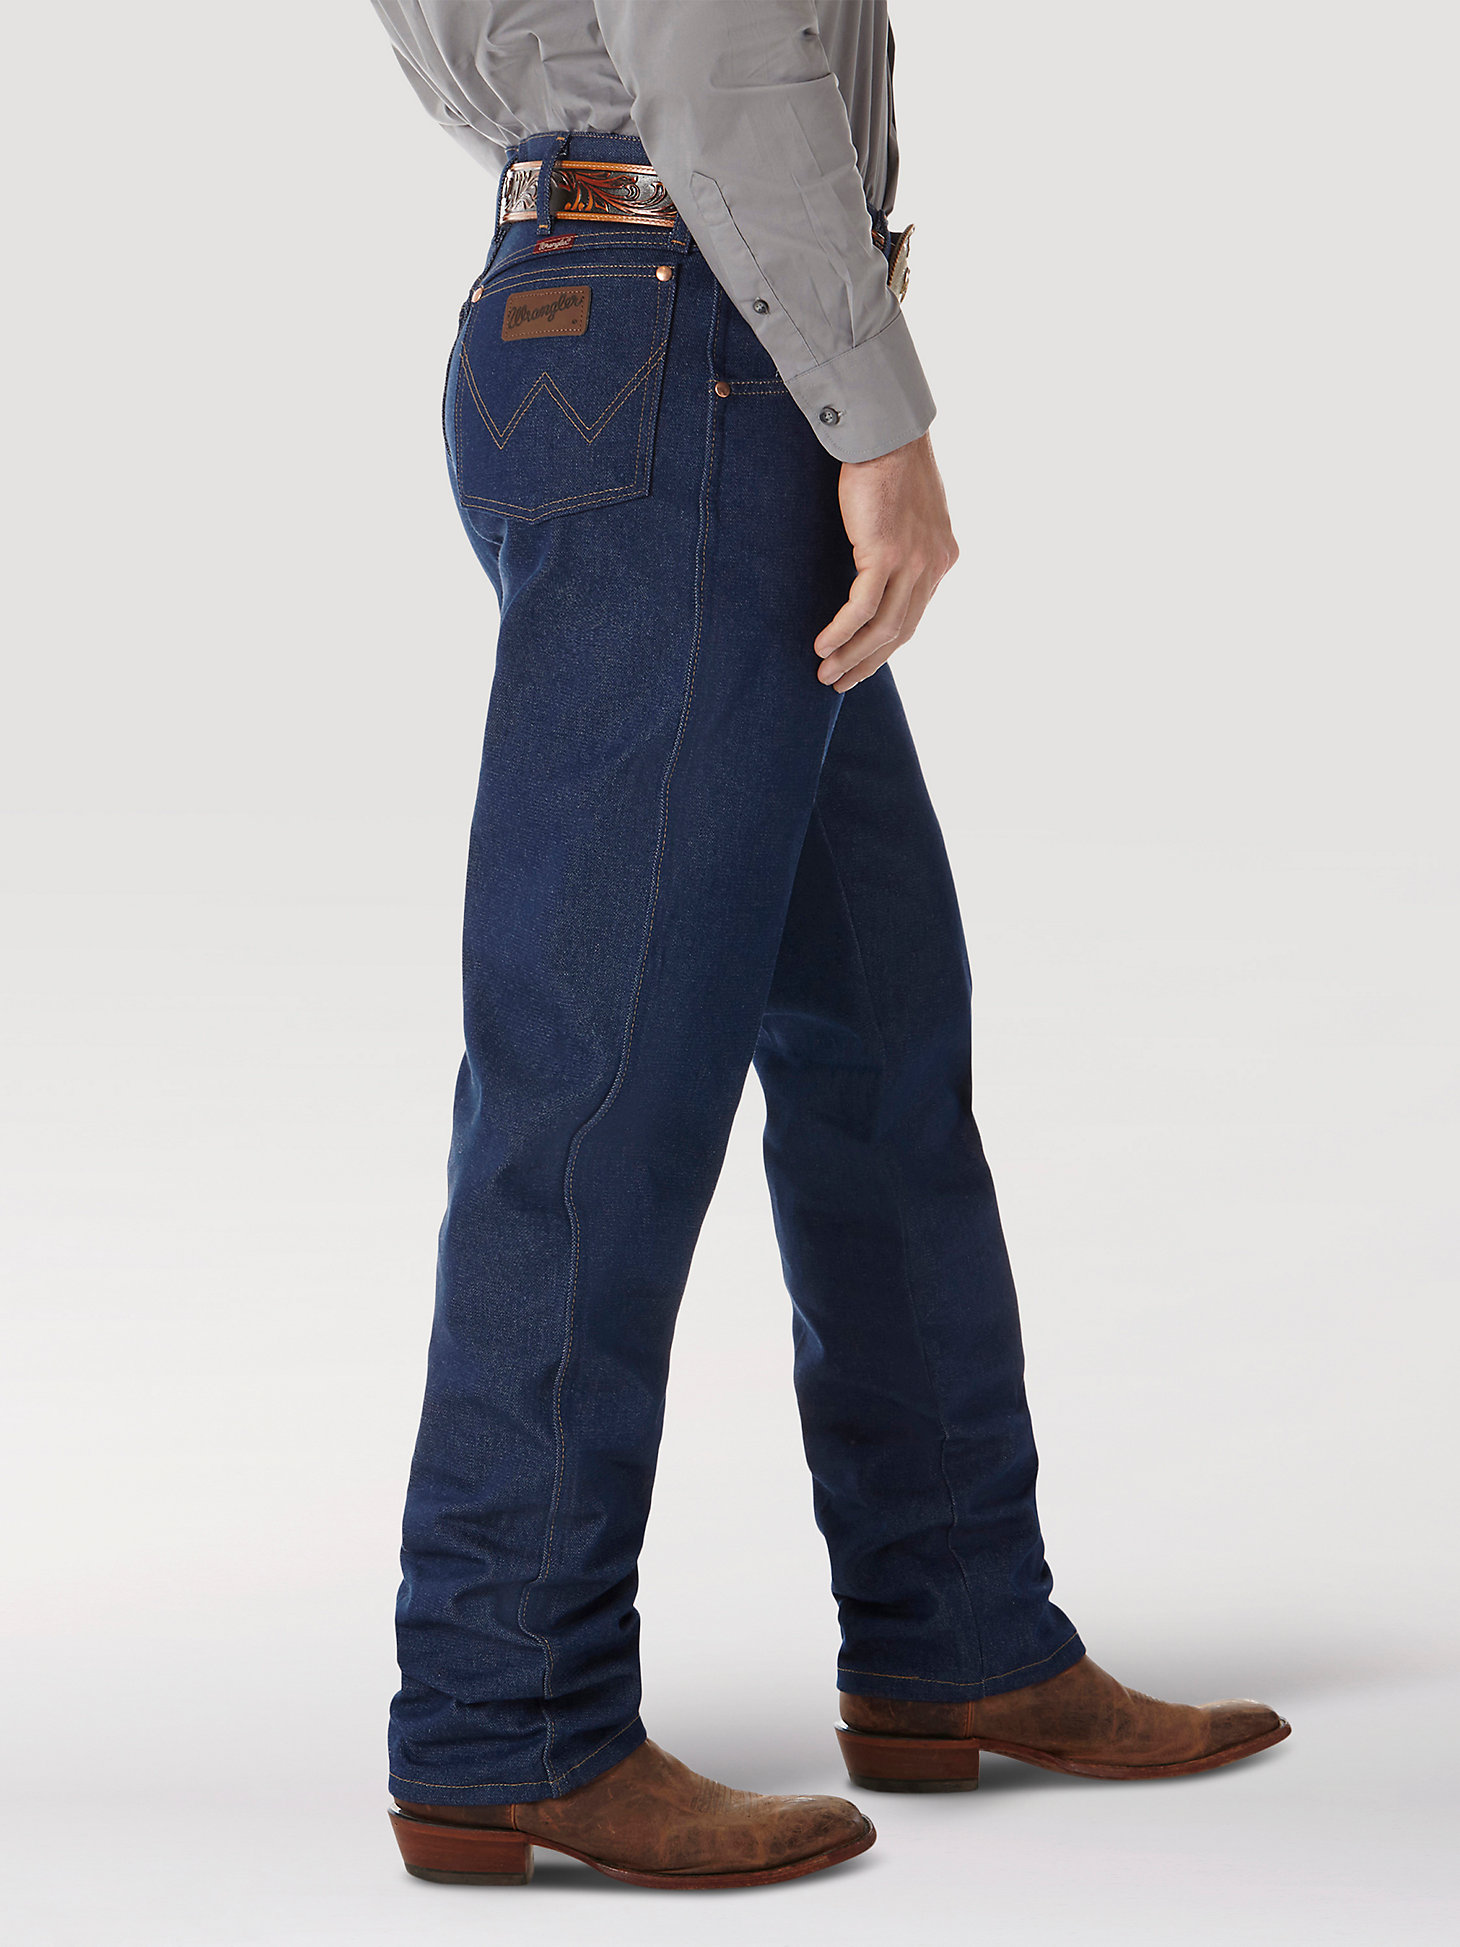 Rigid Wrangler® Cowboy Cut® Relaxed Fit Jean in Rigid Indigo